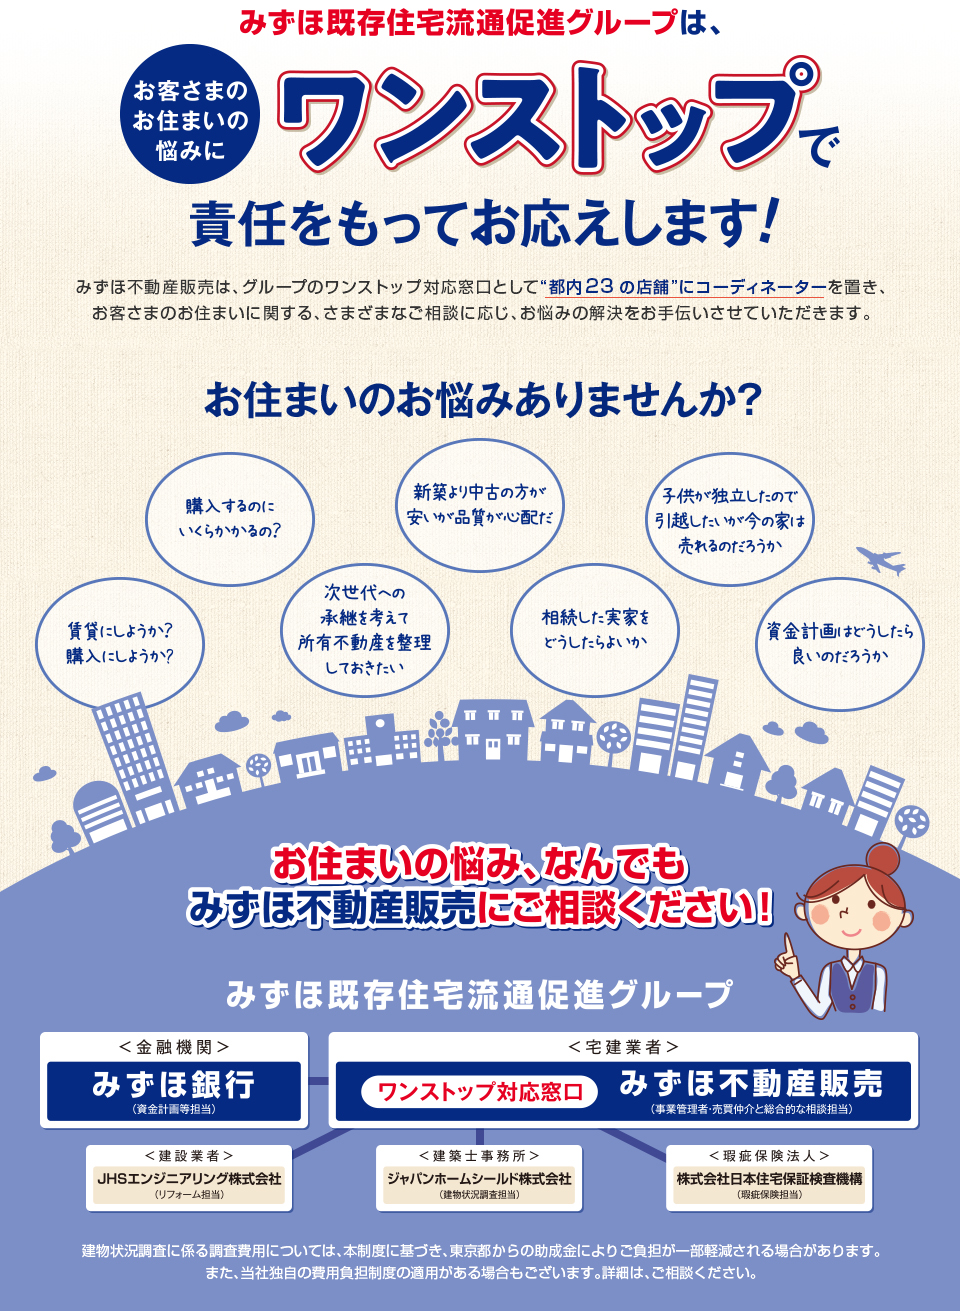 東京都既存住宅流通促進事業者グループ登録制度